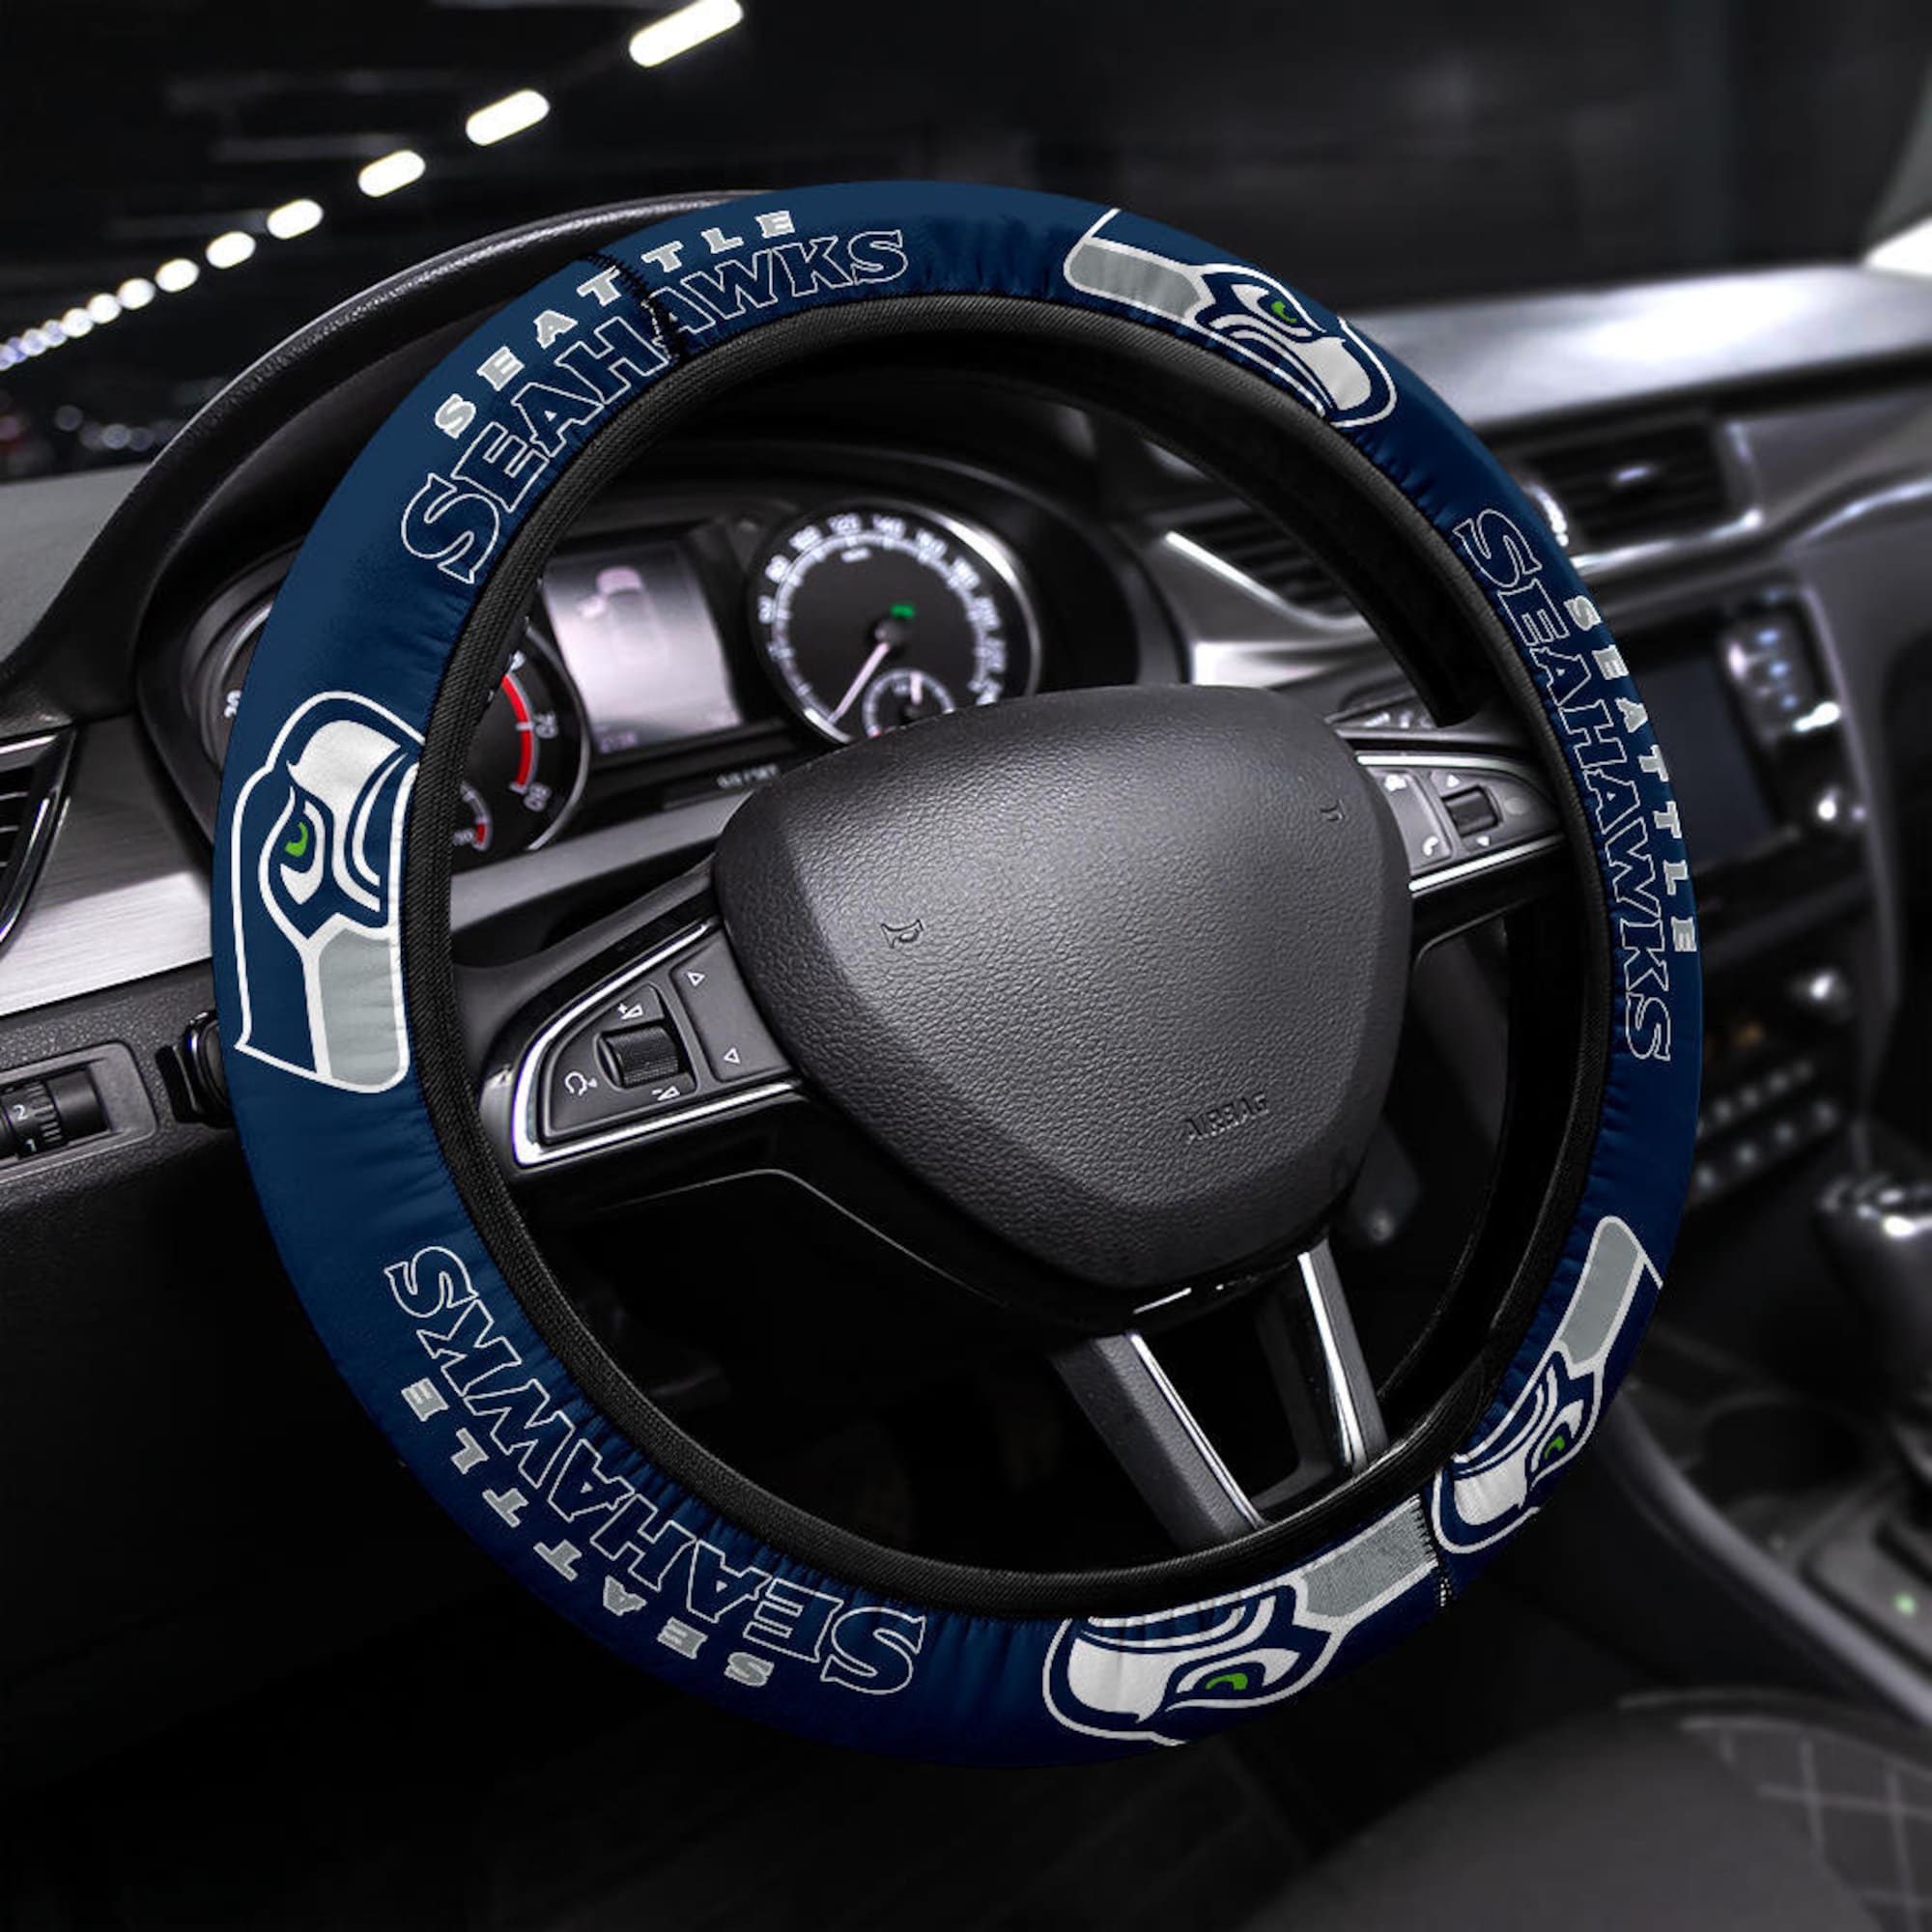 Seattle Seahawks themed custom steering wheel cover for a fan